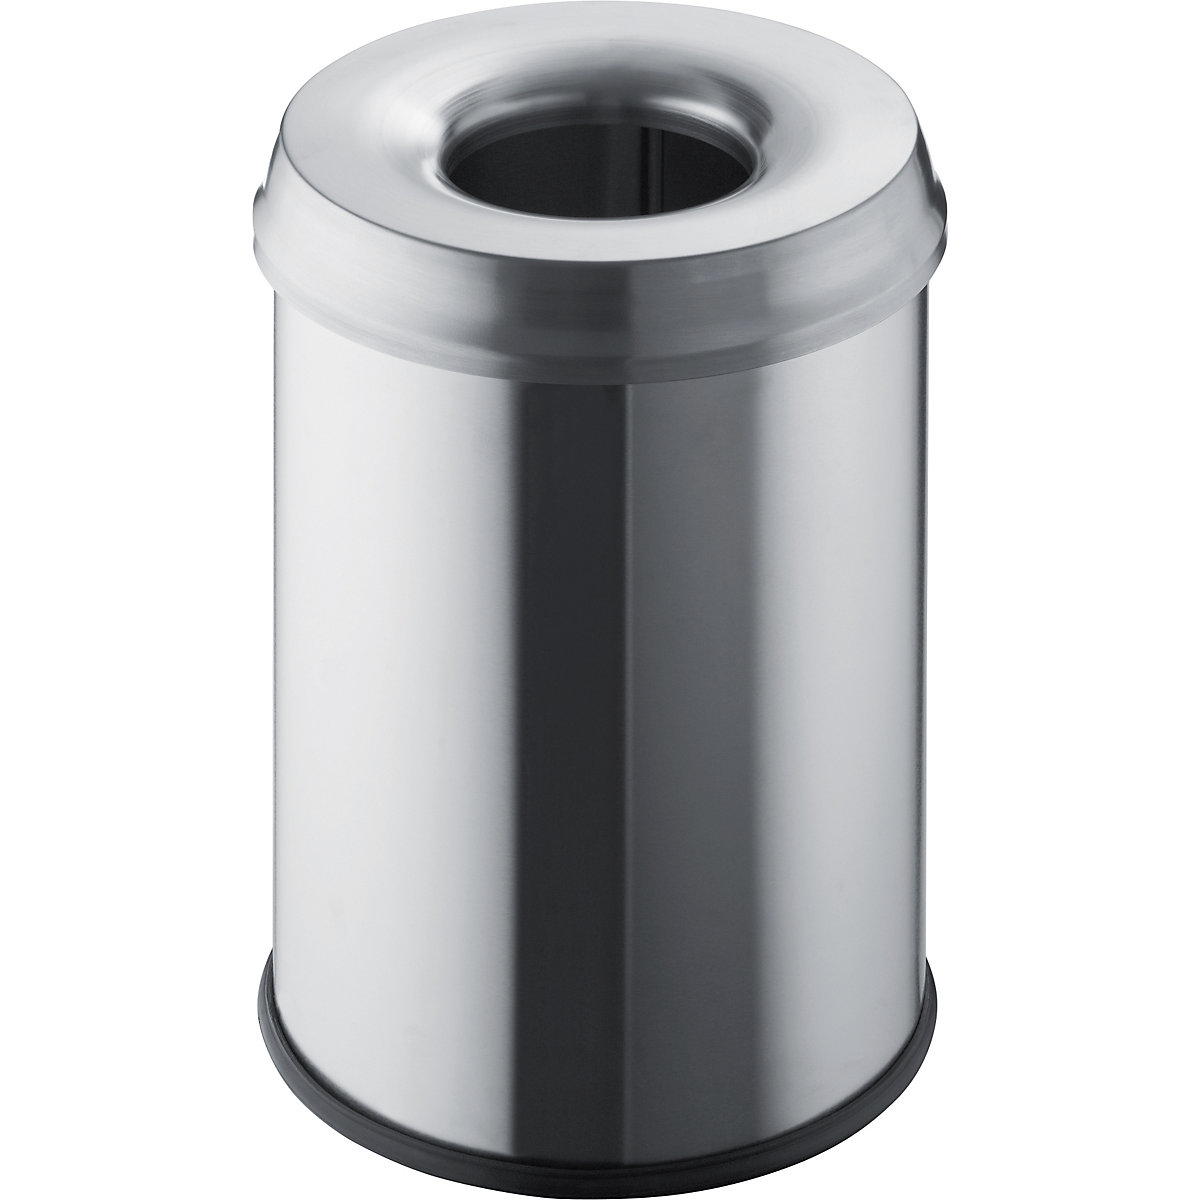 Bezpieczny pojemnik na odpady – helit, poj. 15 l, wys. x Ø 335 x 260 mm, stal szlachetna, opak. 2 szt.-2